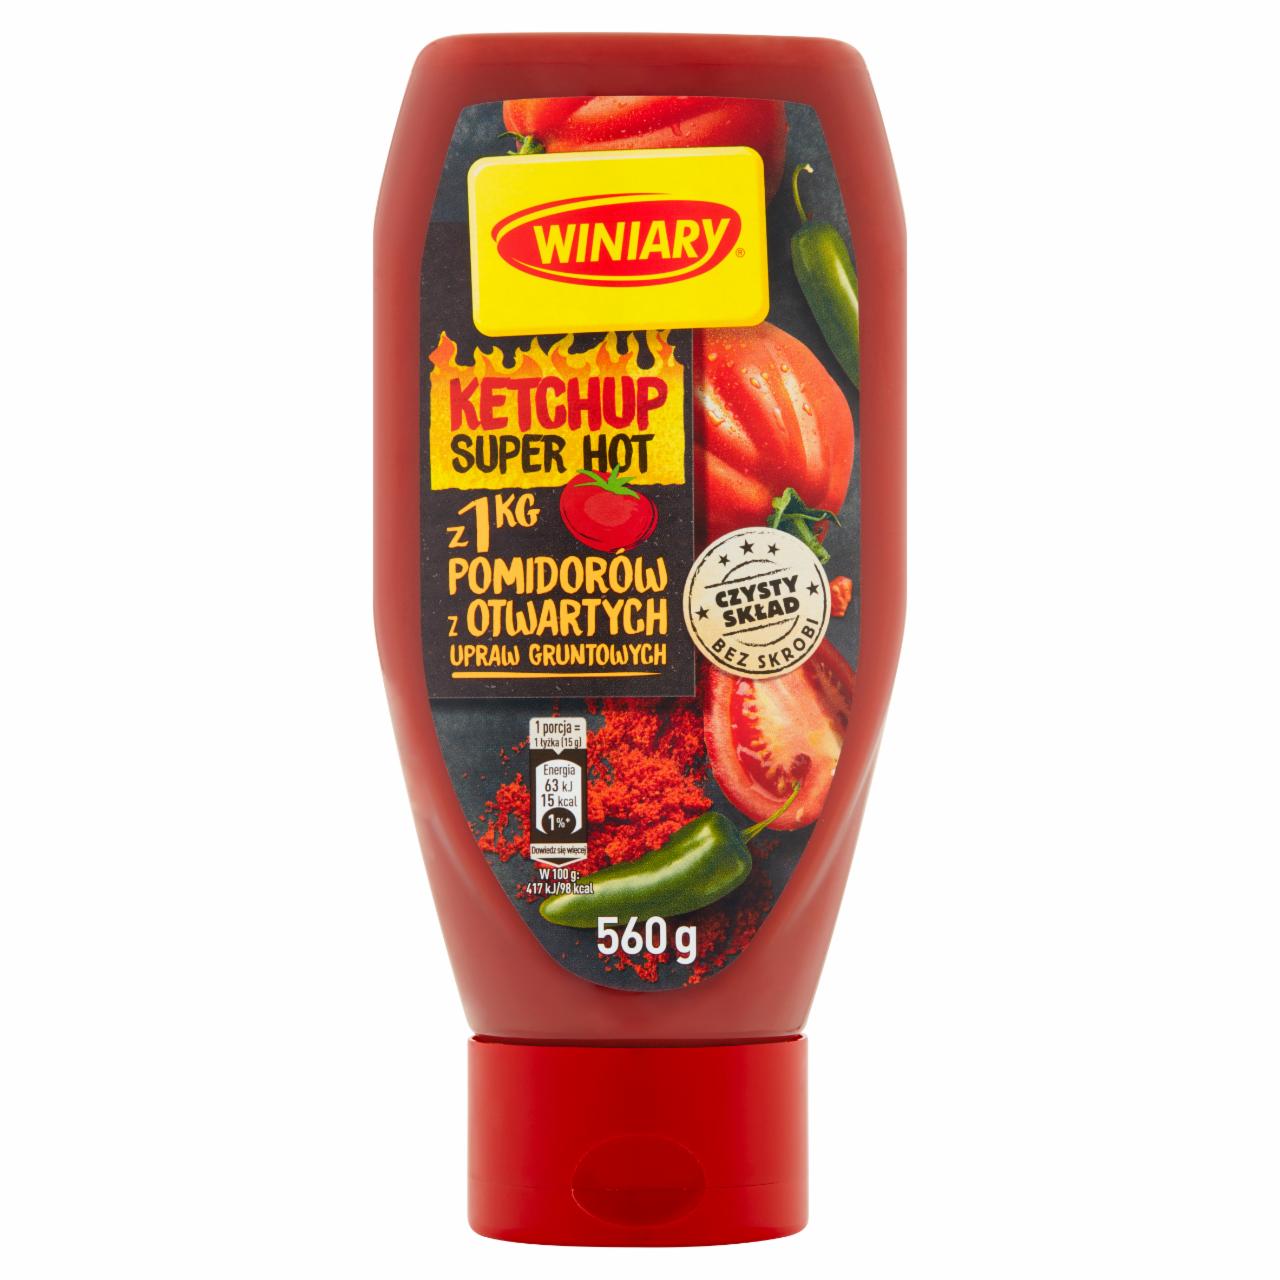 Fotografie - Ketchup Super hot z Pomidorow z Otwartych upraw gruntowych Winiary